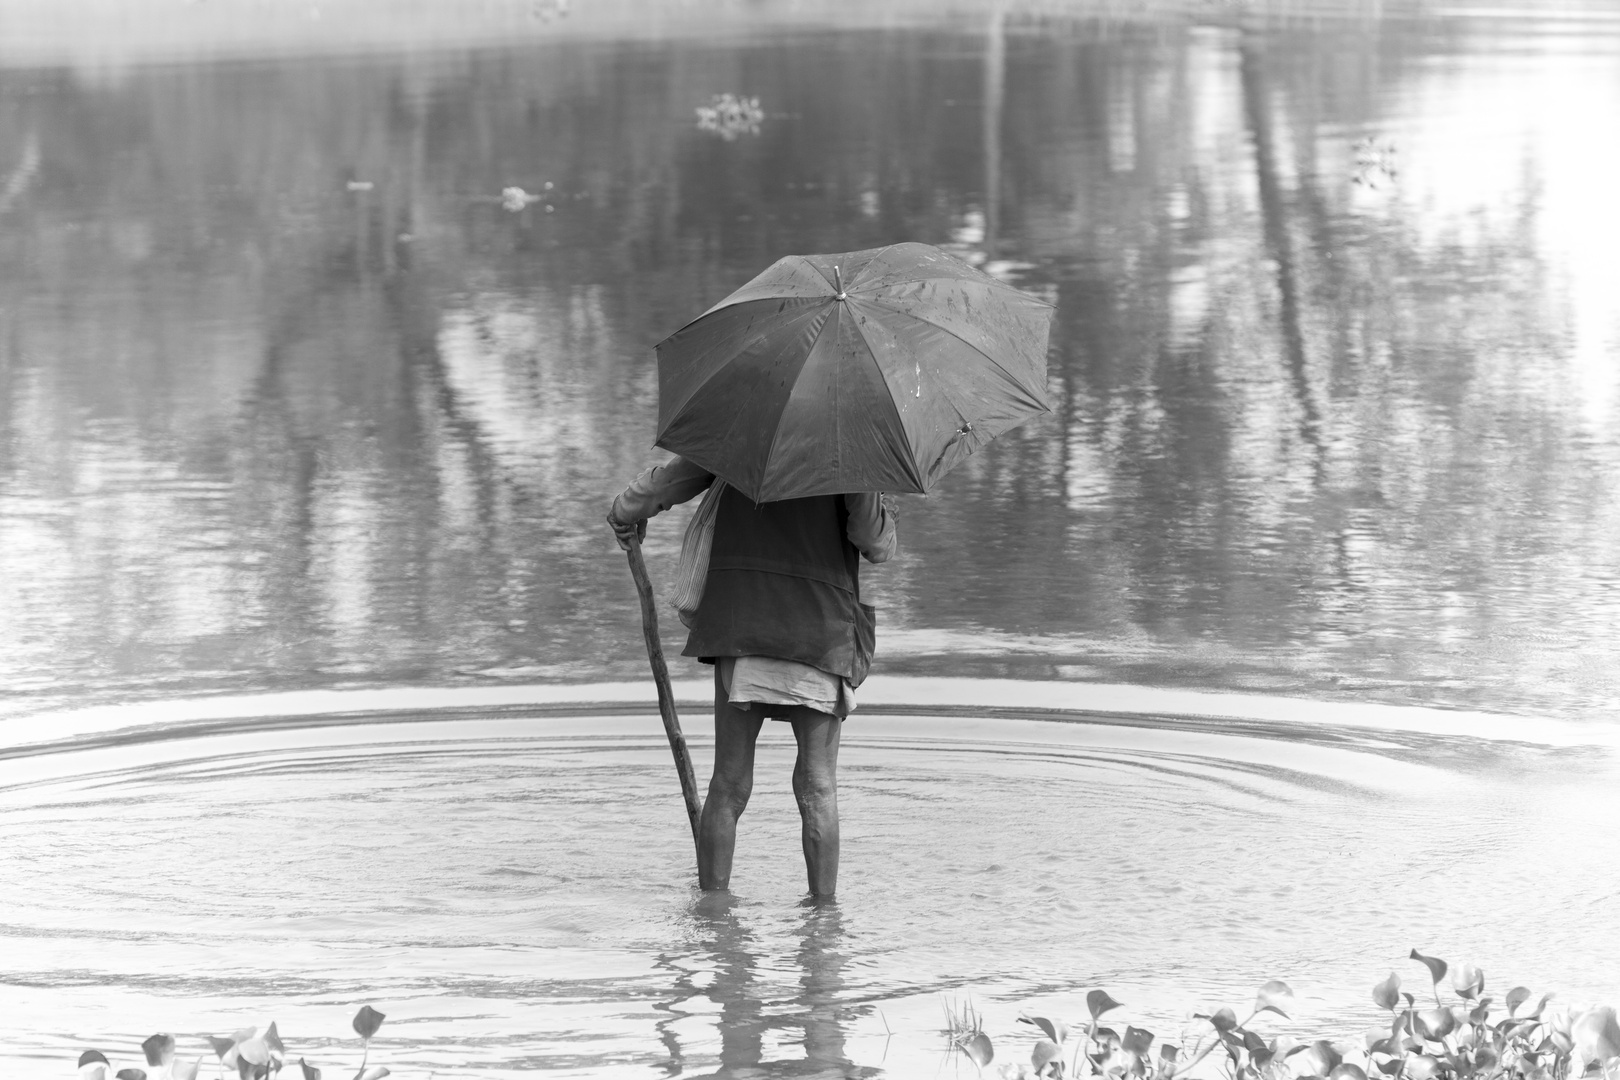 Mit dem Regenschirm im Wasser.